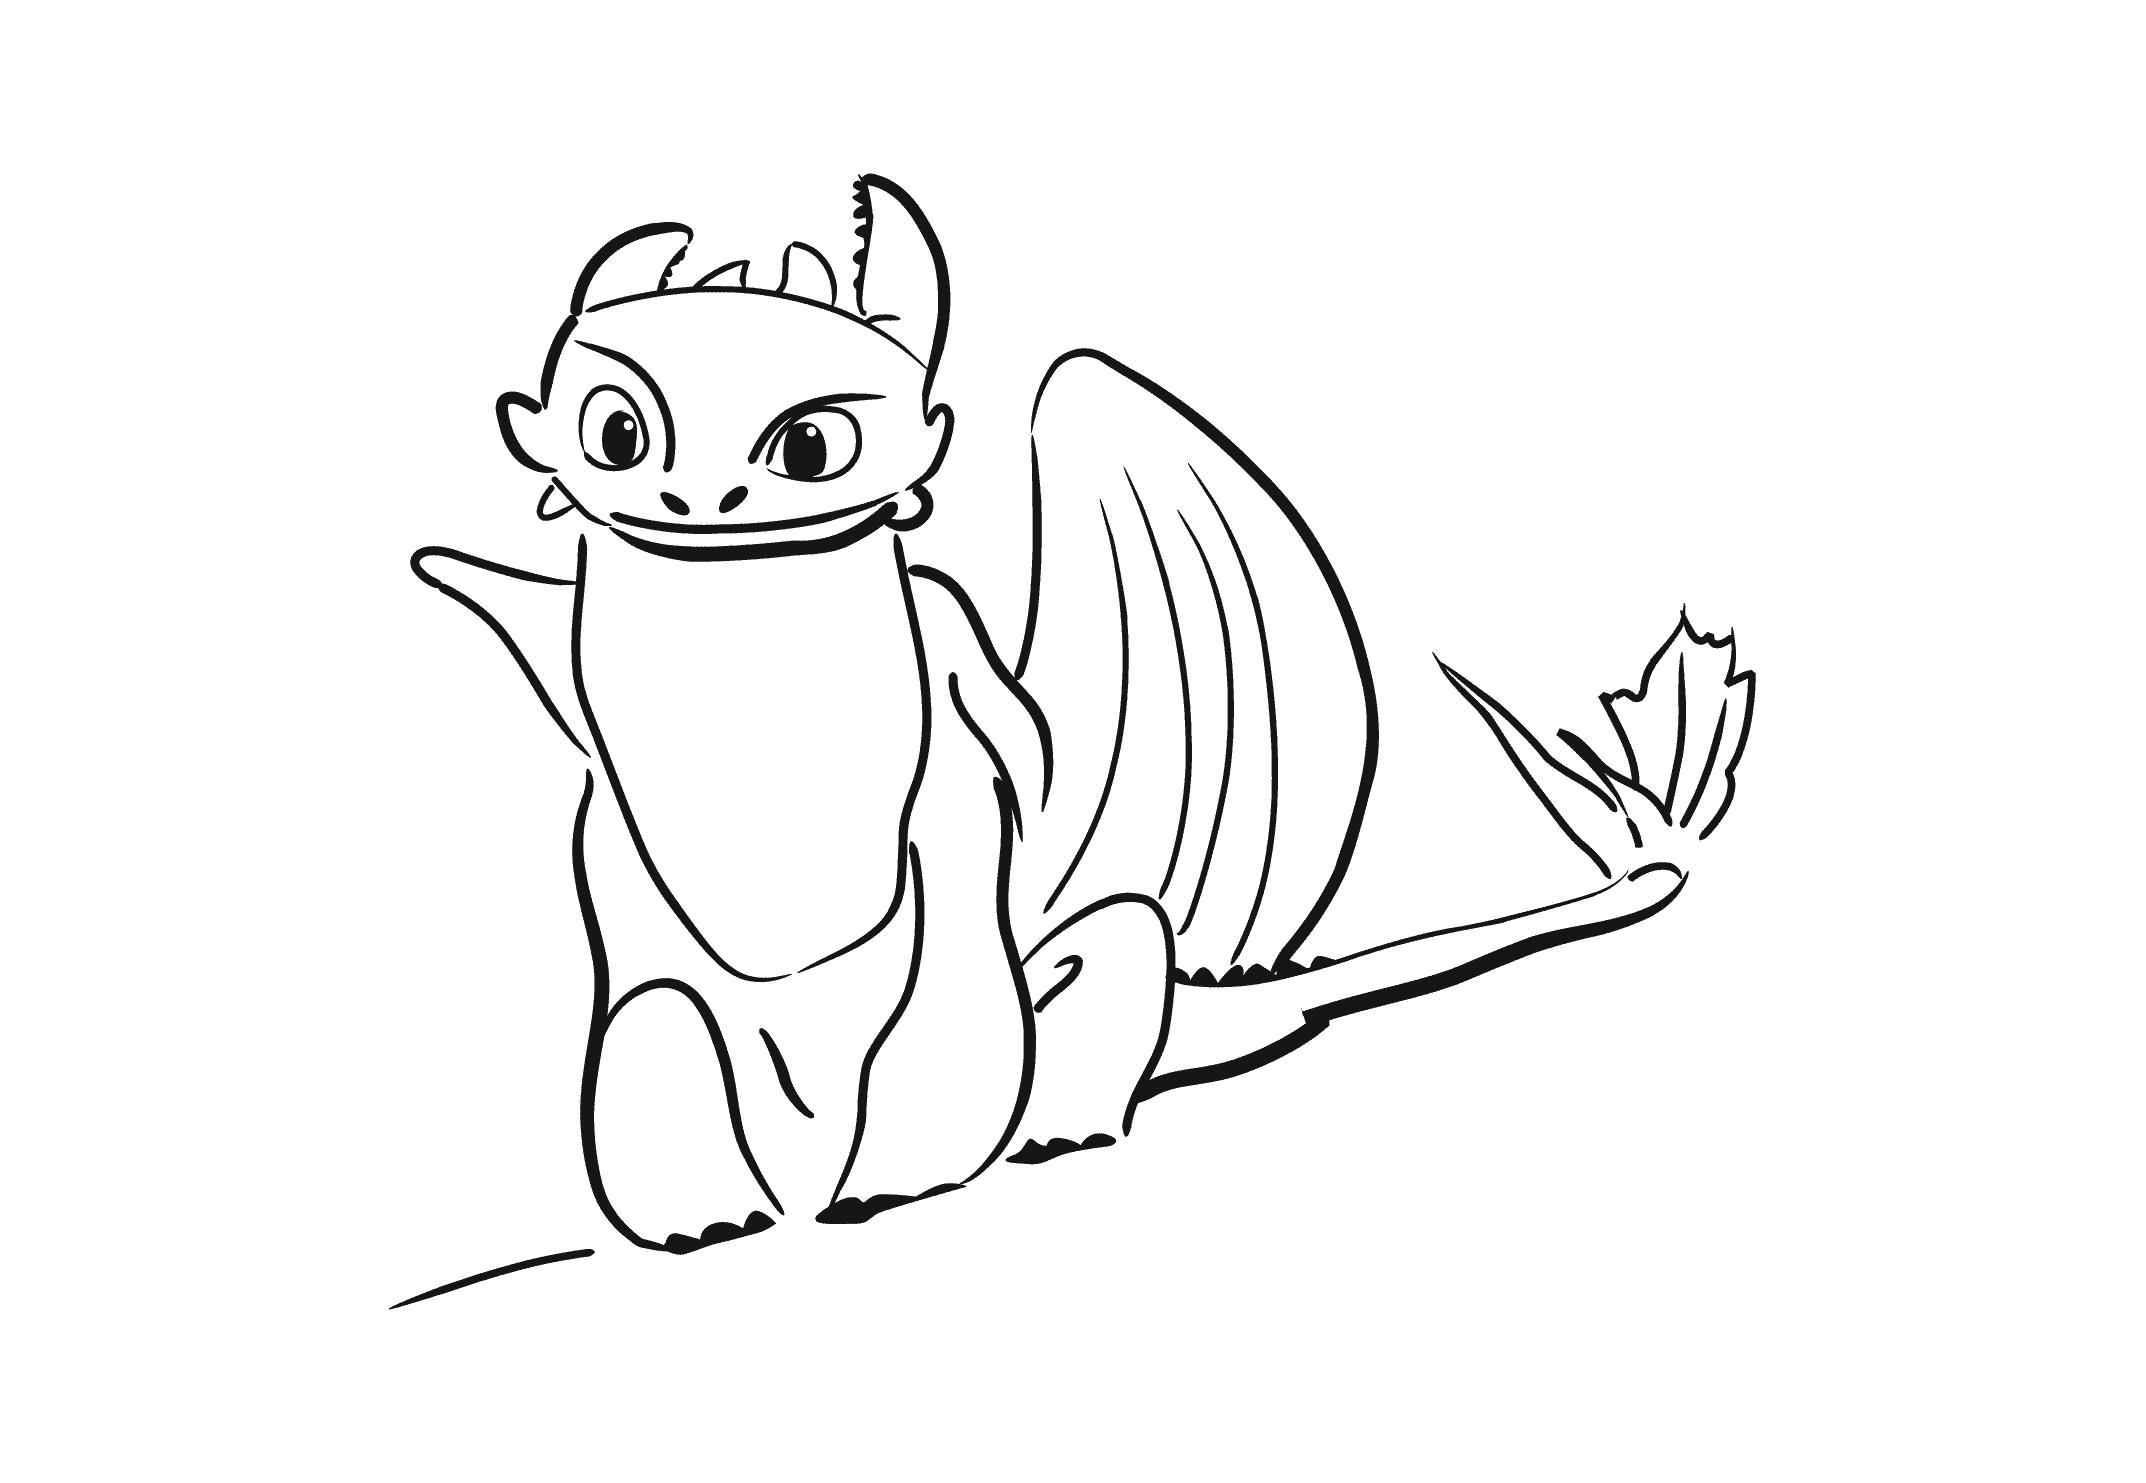 Раскраска Беззубик - раскраска из мультфильма Как приручить дракона, для детей (Распечатать/скачать). мифические существа